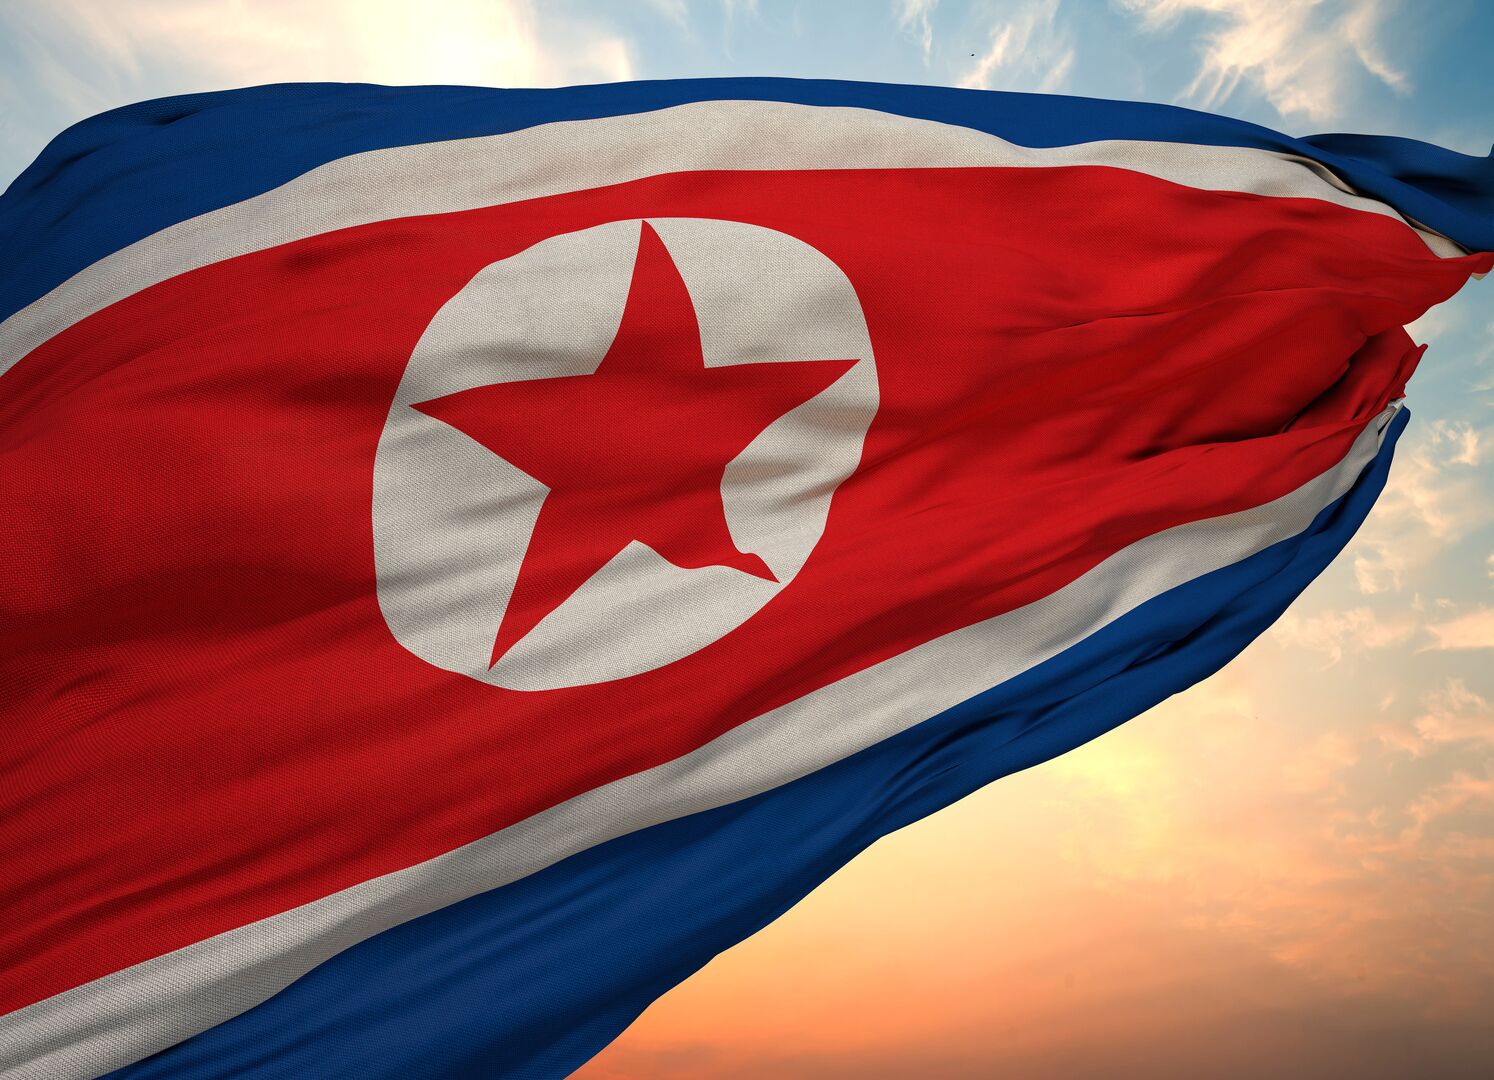 كوريا الشمالية: العقوبات الأمريكية تحولت إلى حبل المشنقة حول رقبة واشنطن نفسها